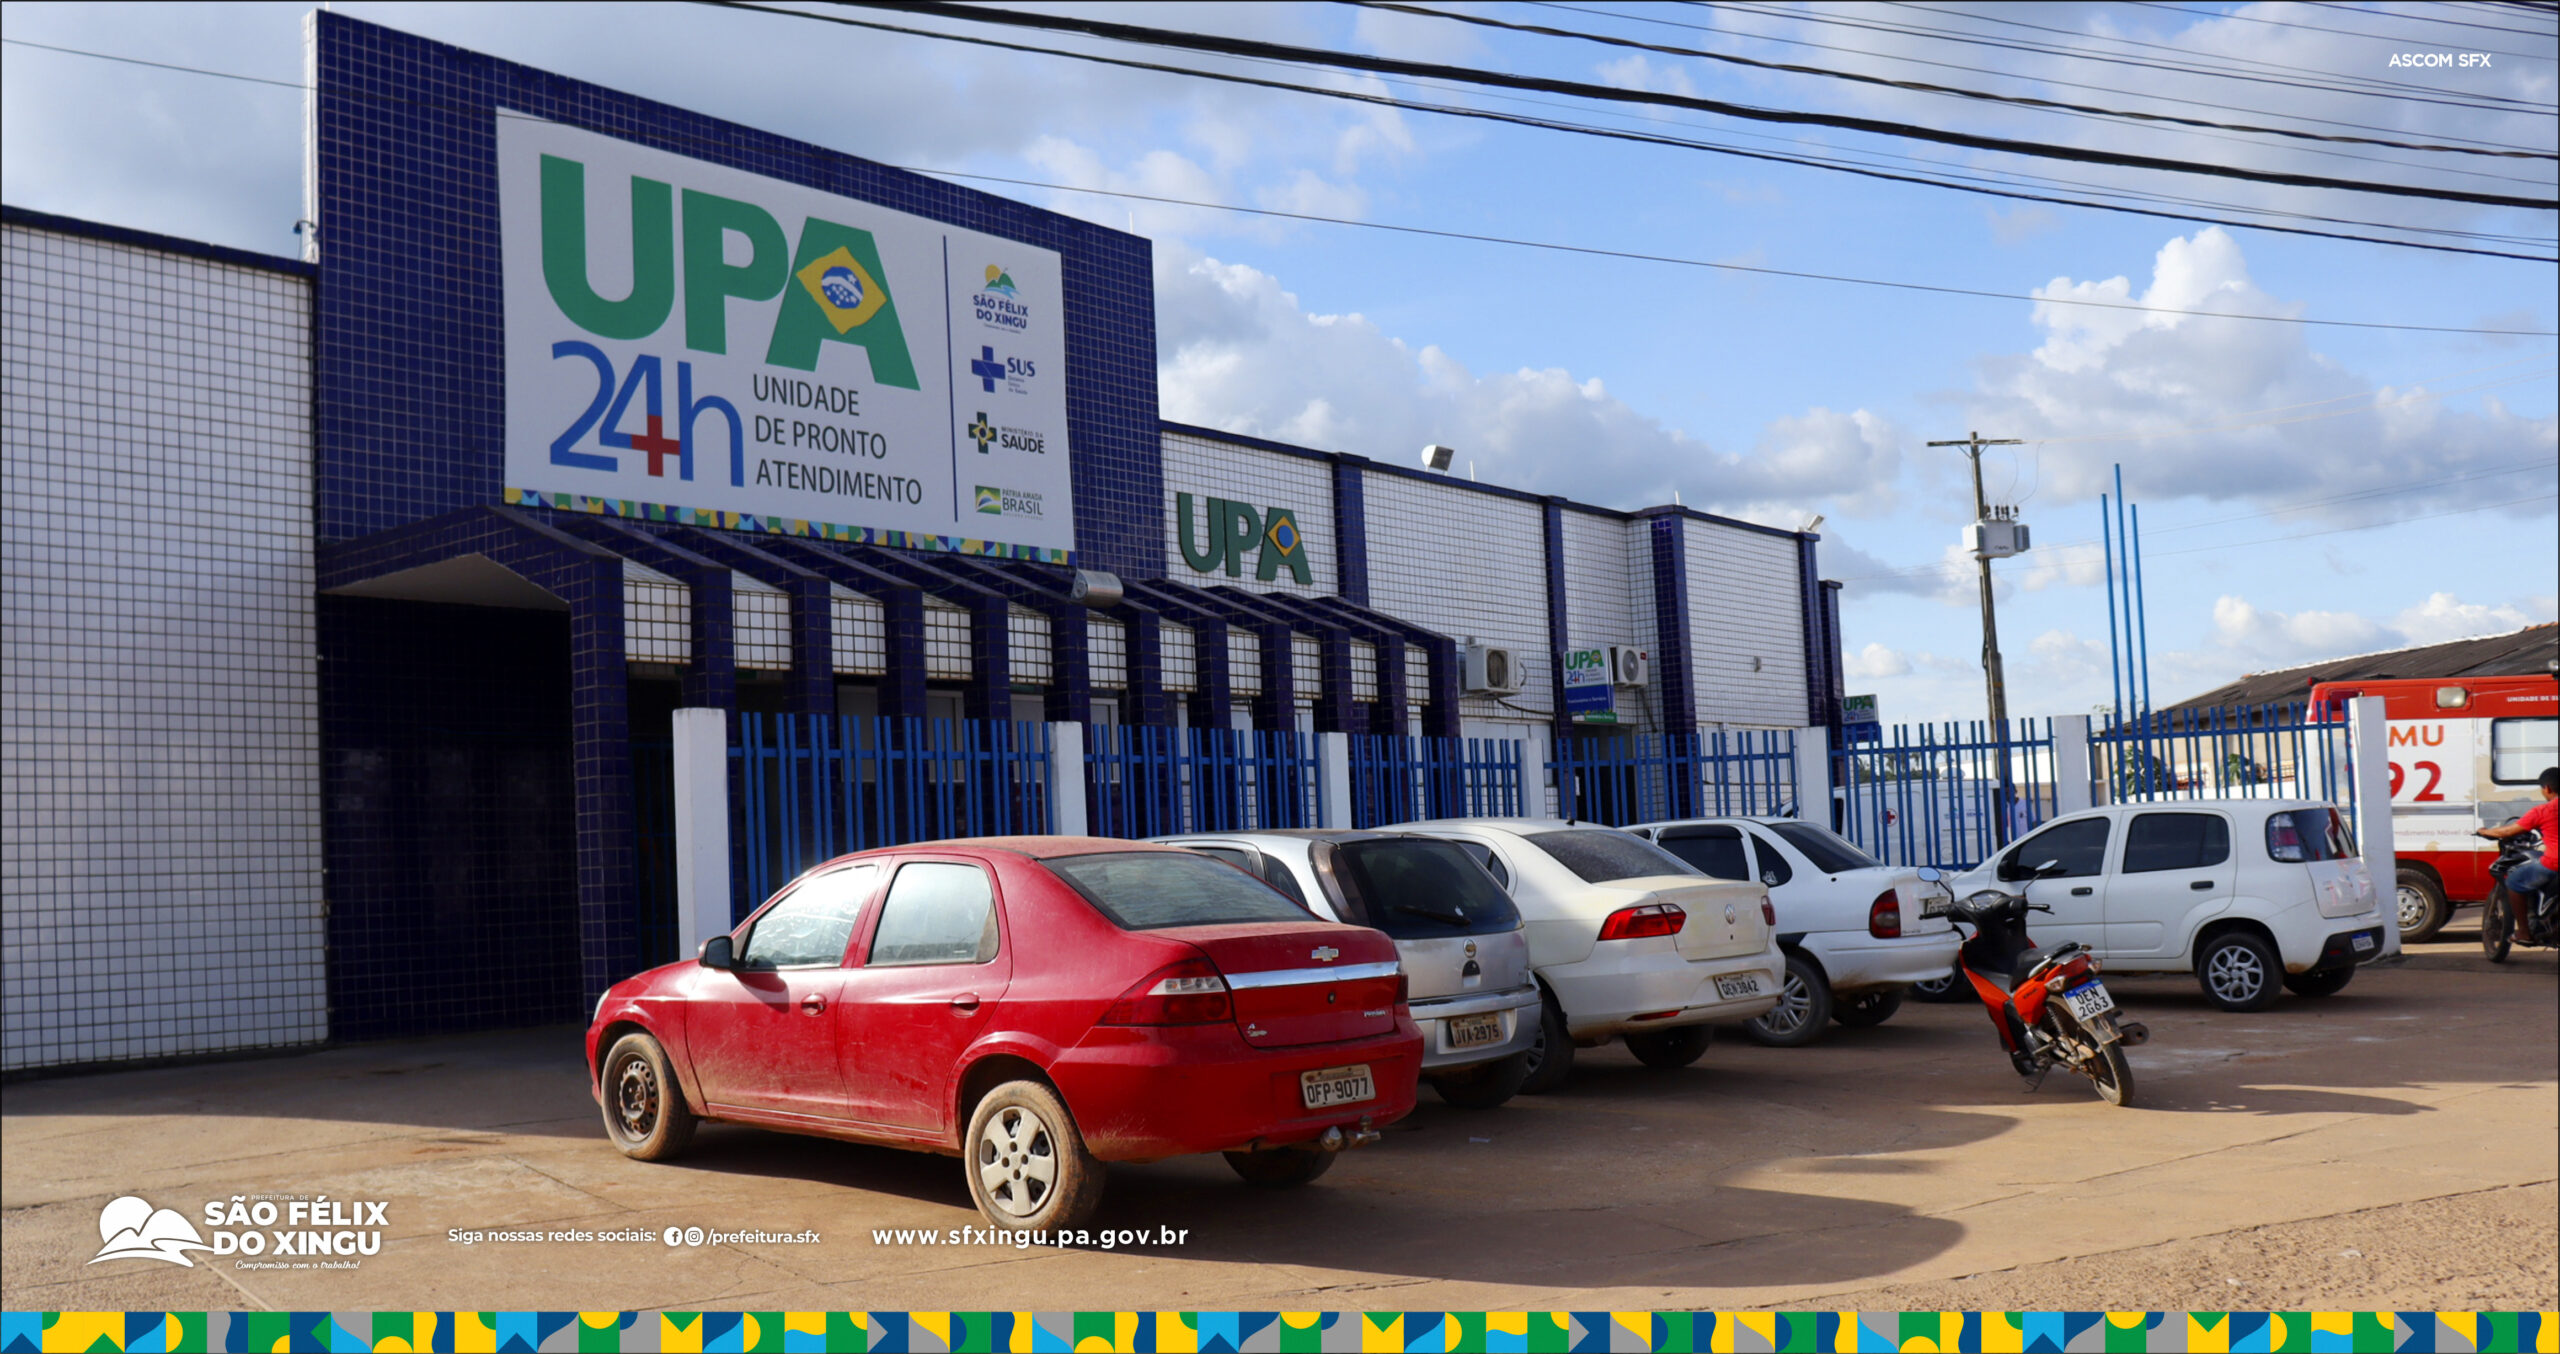 Parto de emergência na UPA reforça o compromisso com a saúde pública de São Félix do Xingu